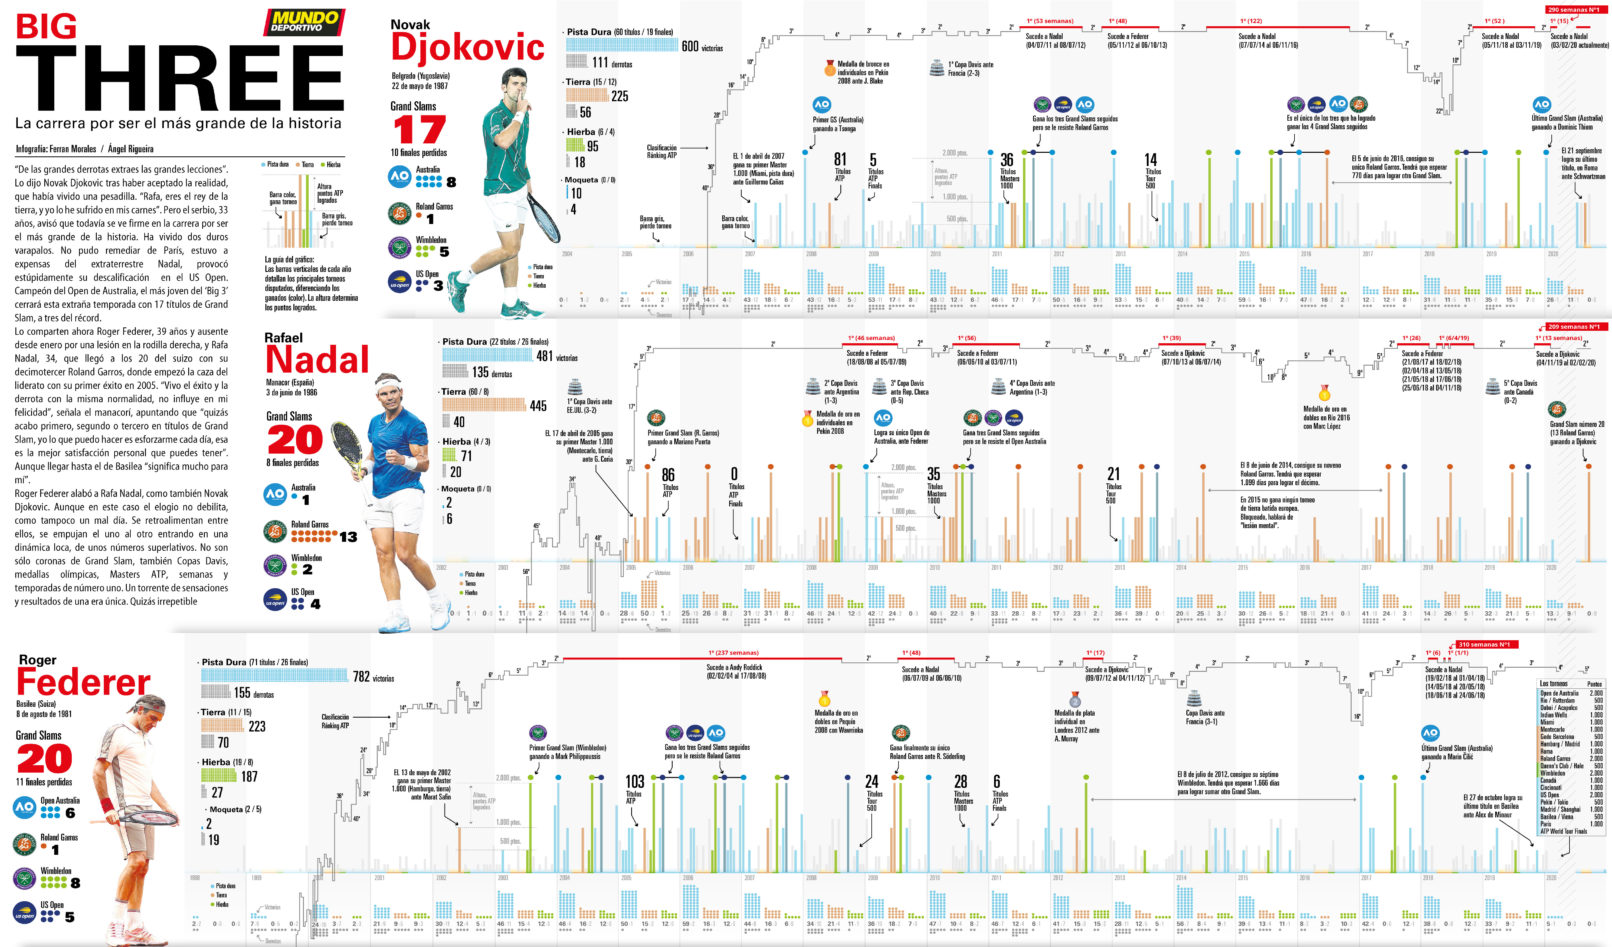 Infografia Big Three comparativa entre los mejores tenistas de todas las epocas